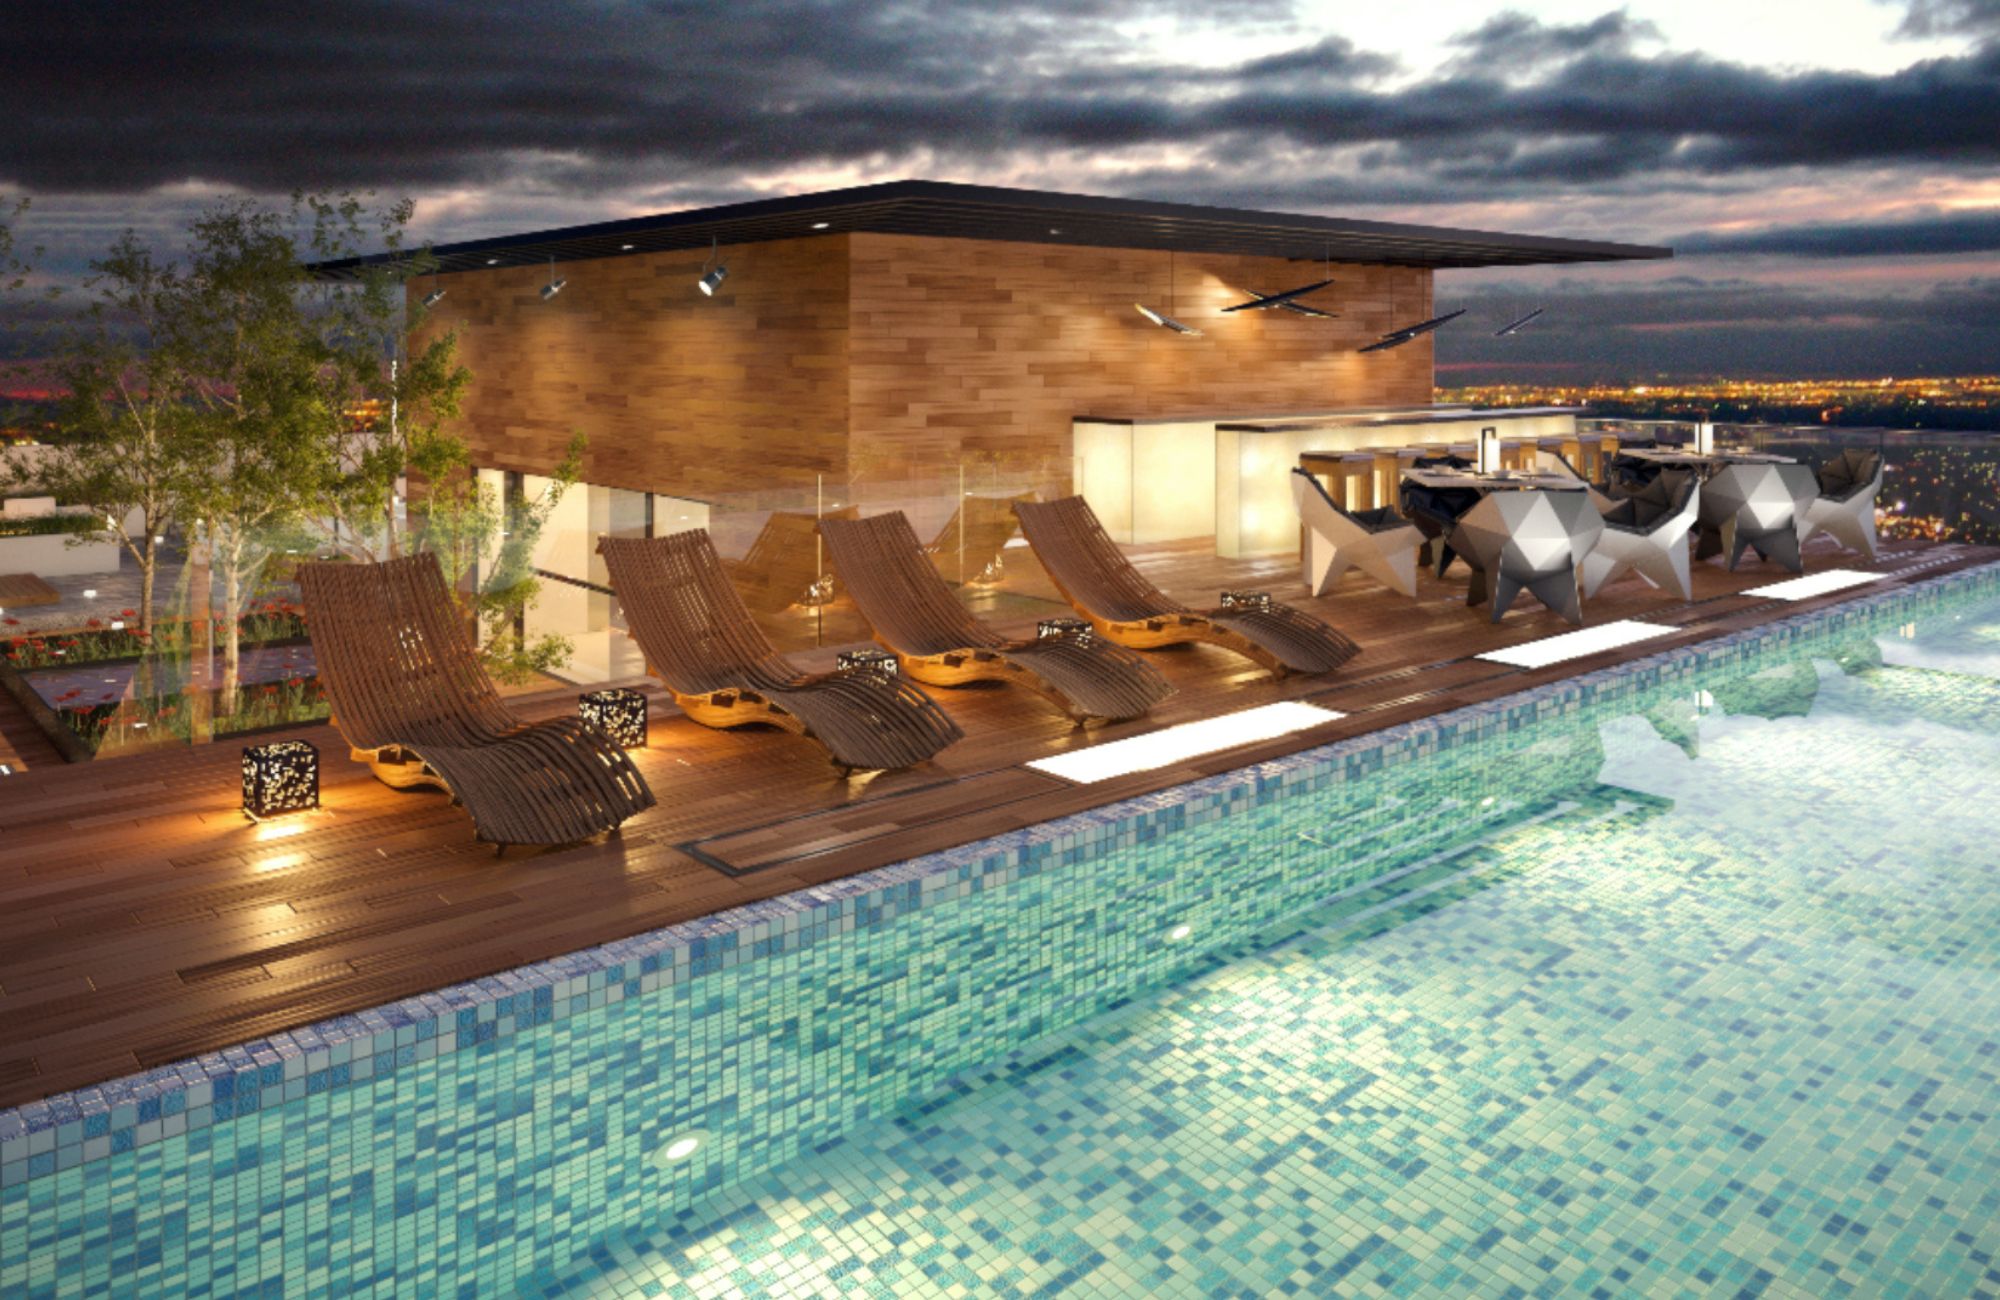 Penthouse de 337 m2, piscina, jacuzzi, spa, pet friendly, en venta Interlomas.